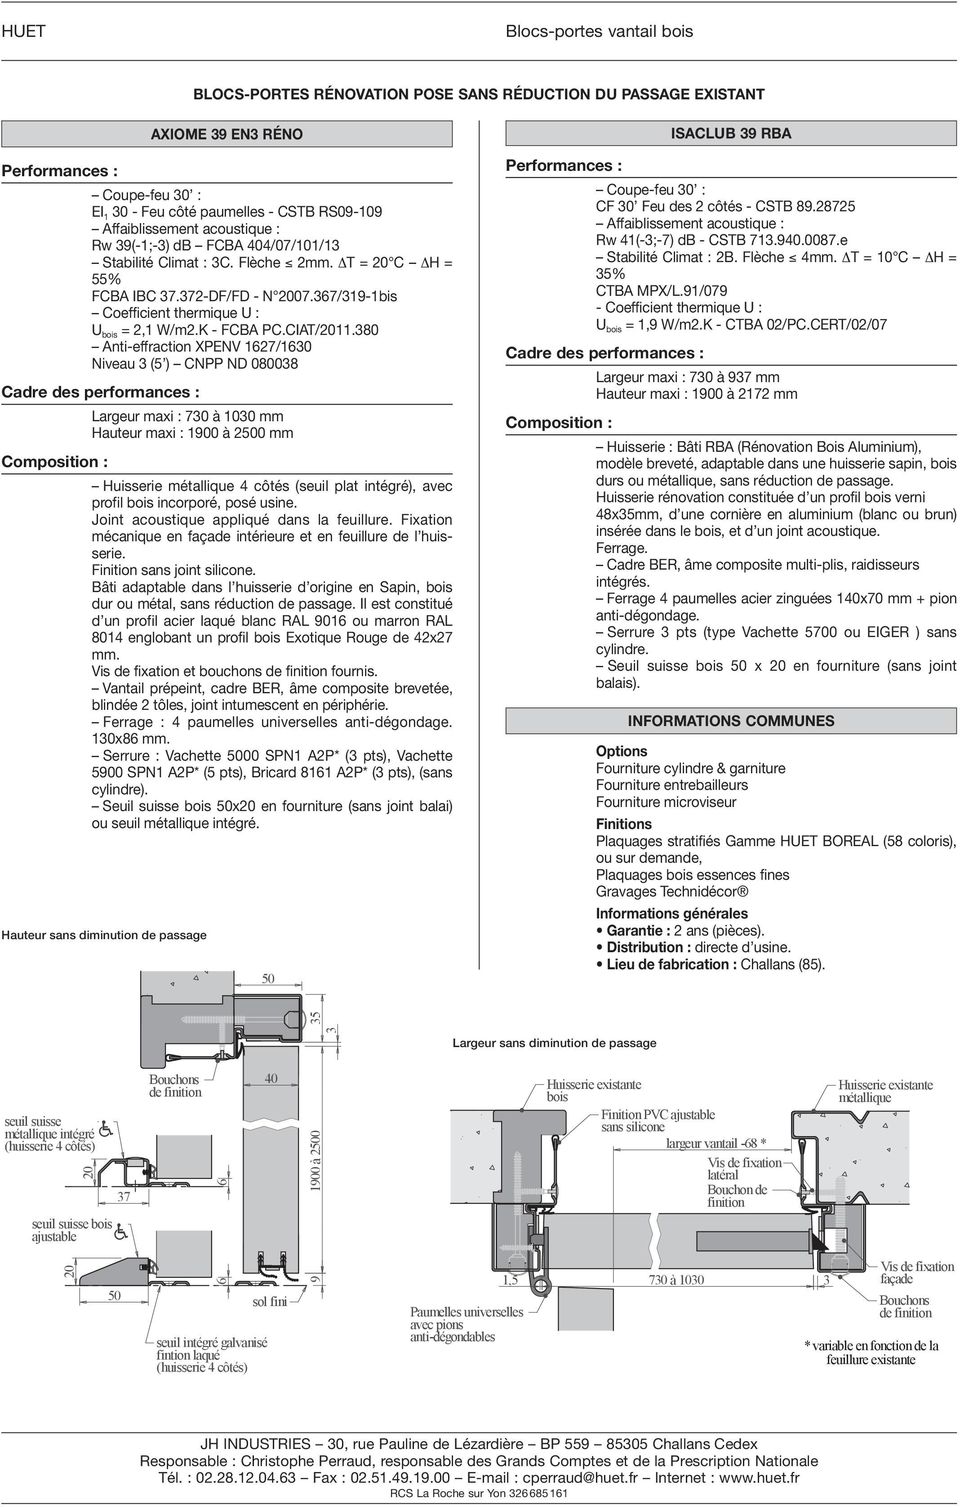 367/319-1bis Coefficient thermique U : U bois = 2,1 W/m2.K - FCBA PC.CIAT/2011.